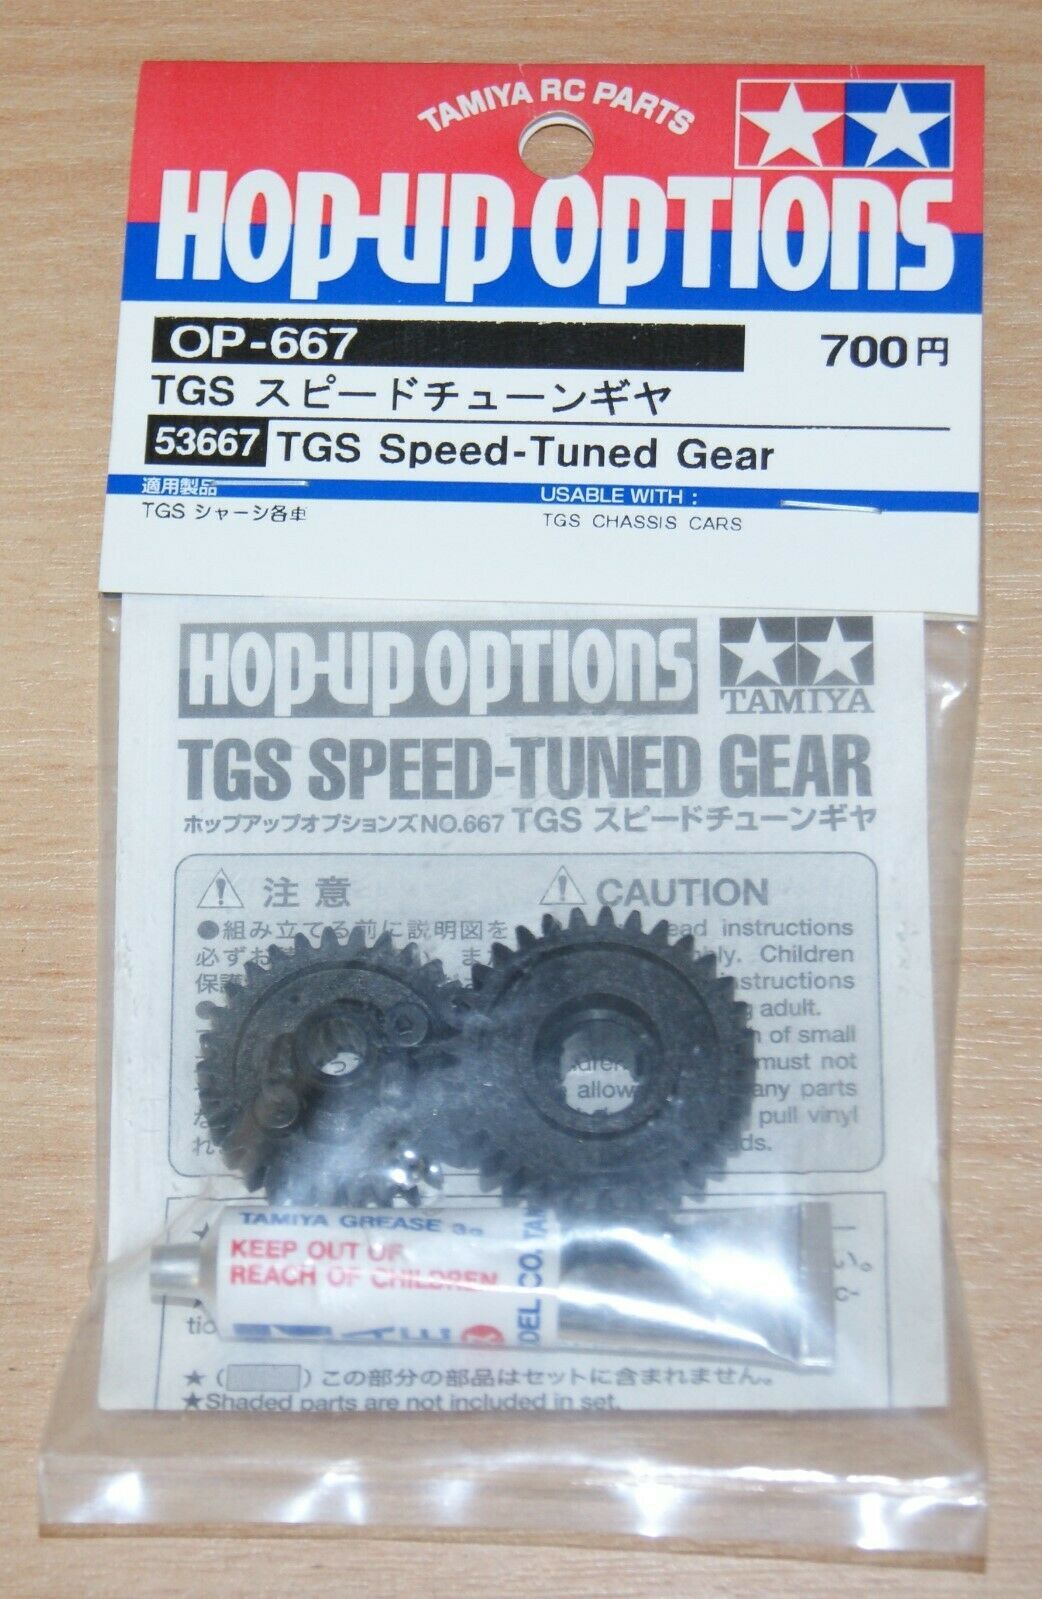 TGS Speed-Tuned Gear